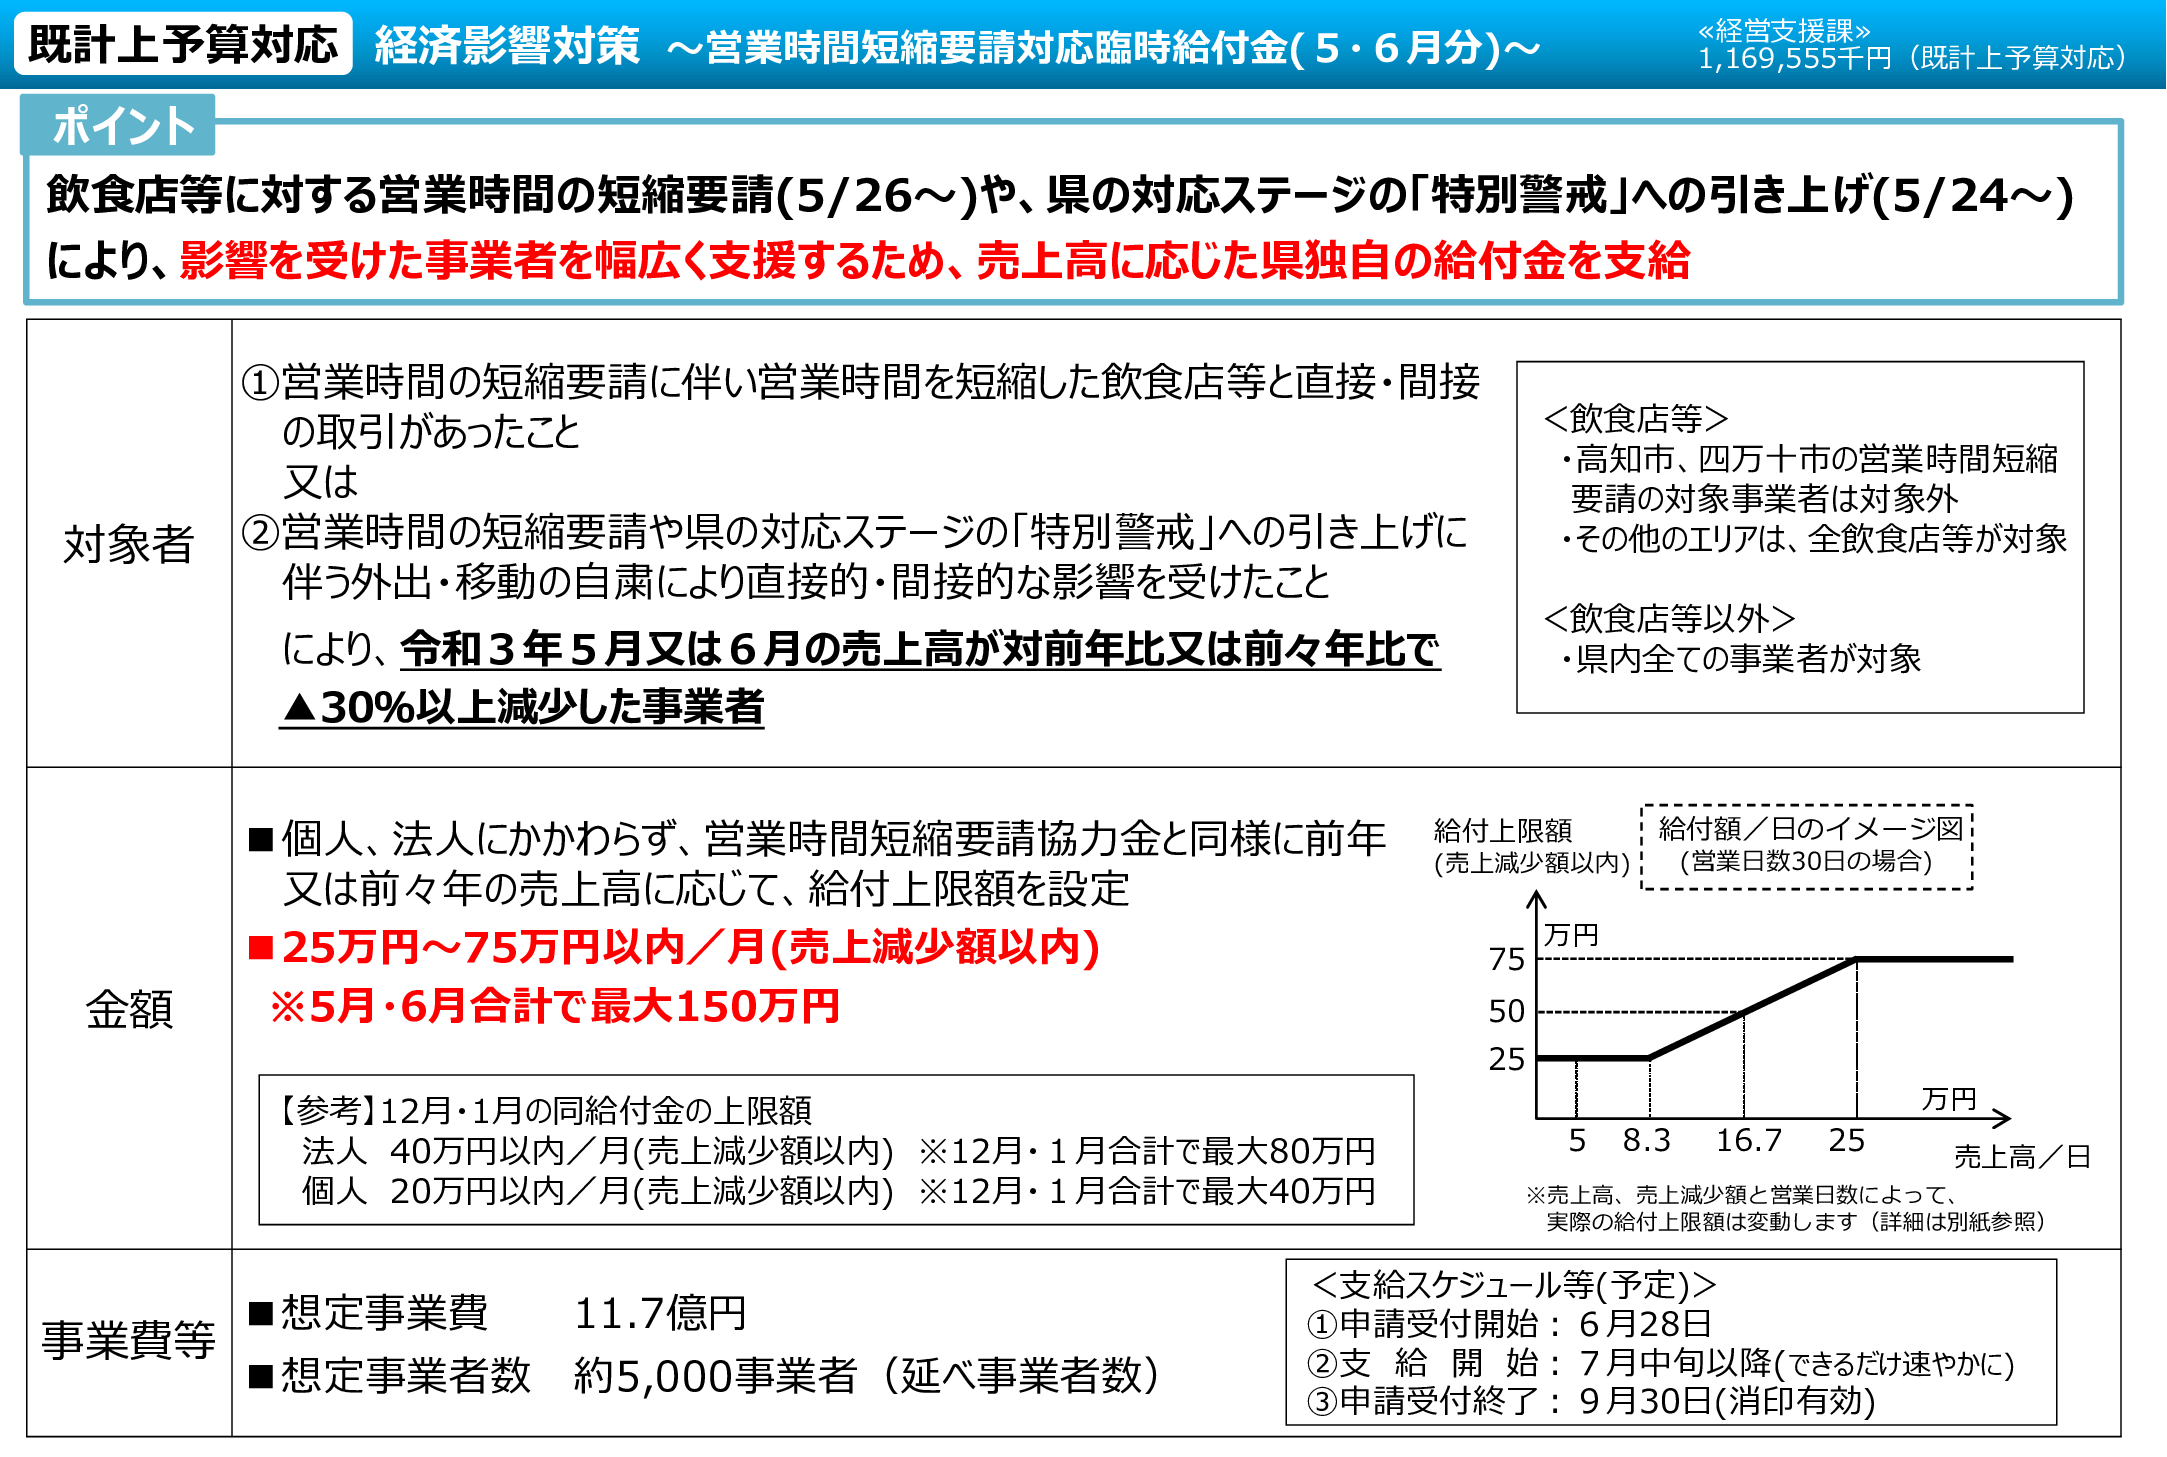 高知県営業時間短縮要請対応臨時給付金（５月～６月分）の概要